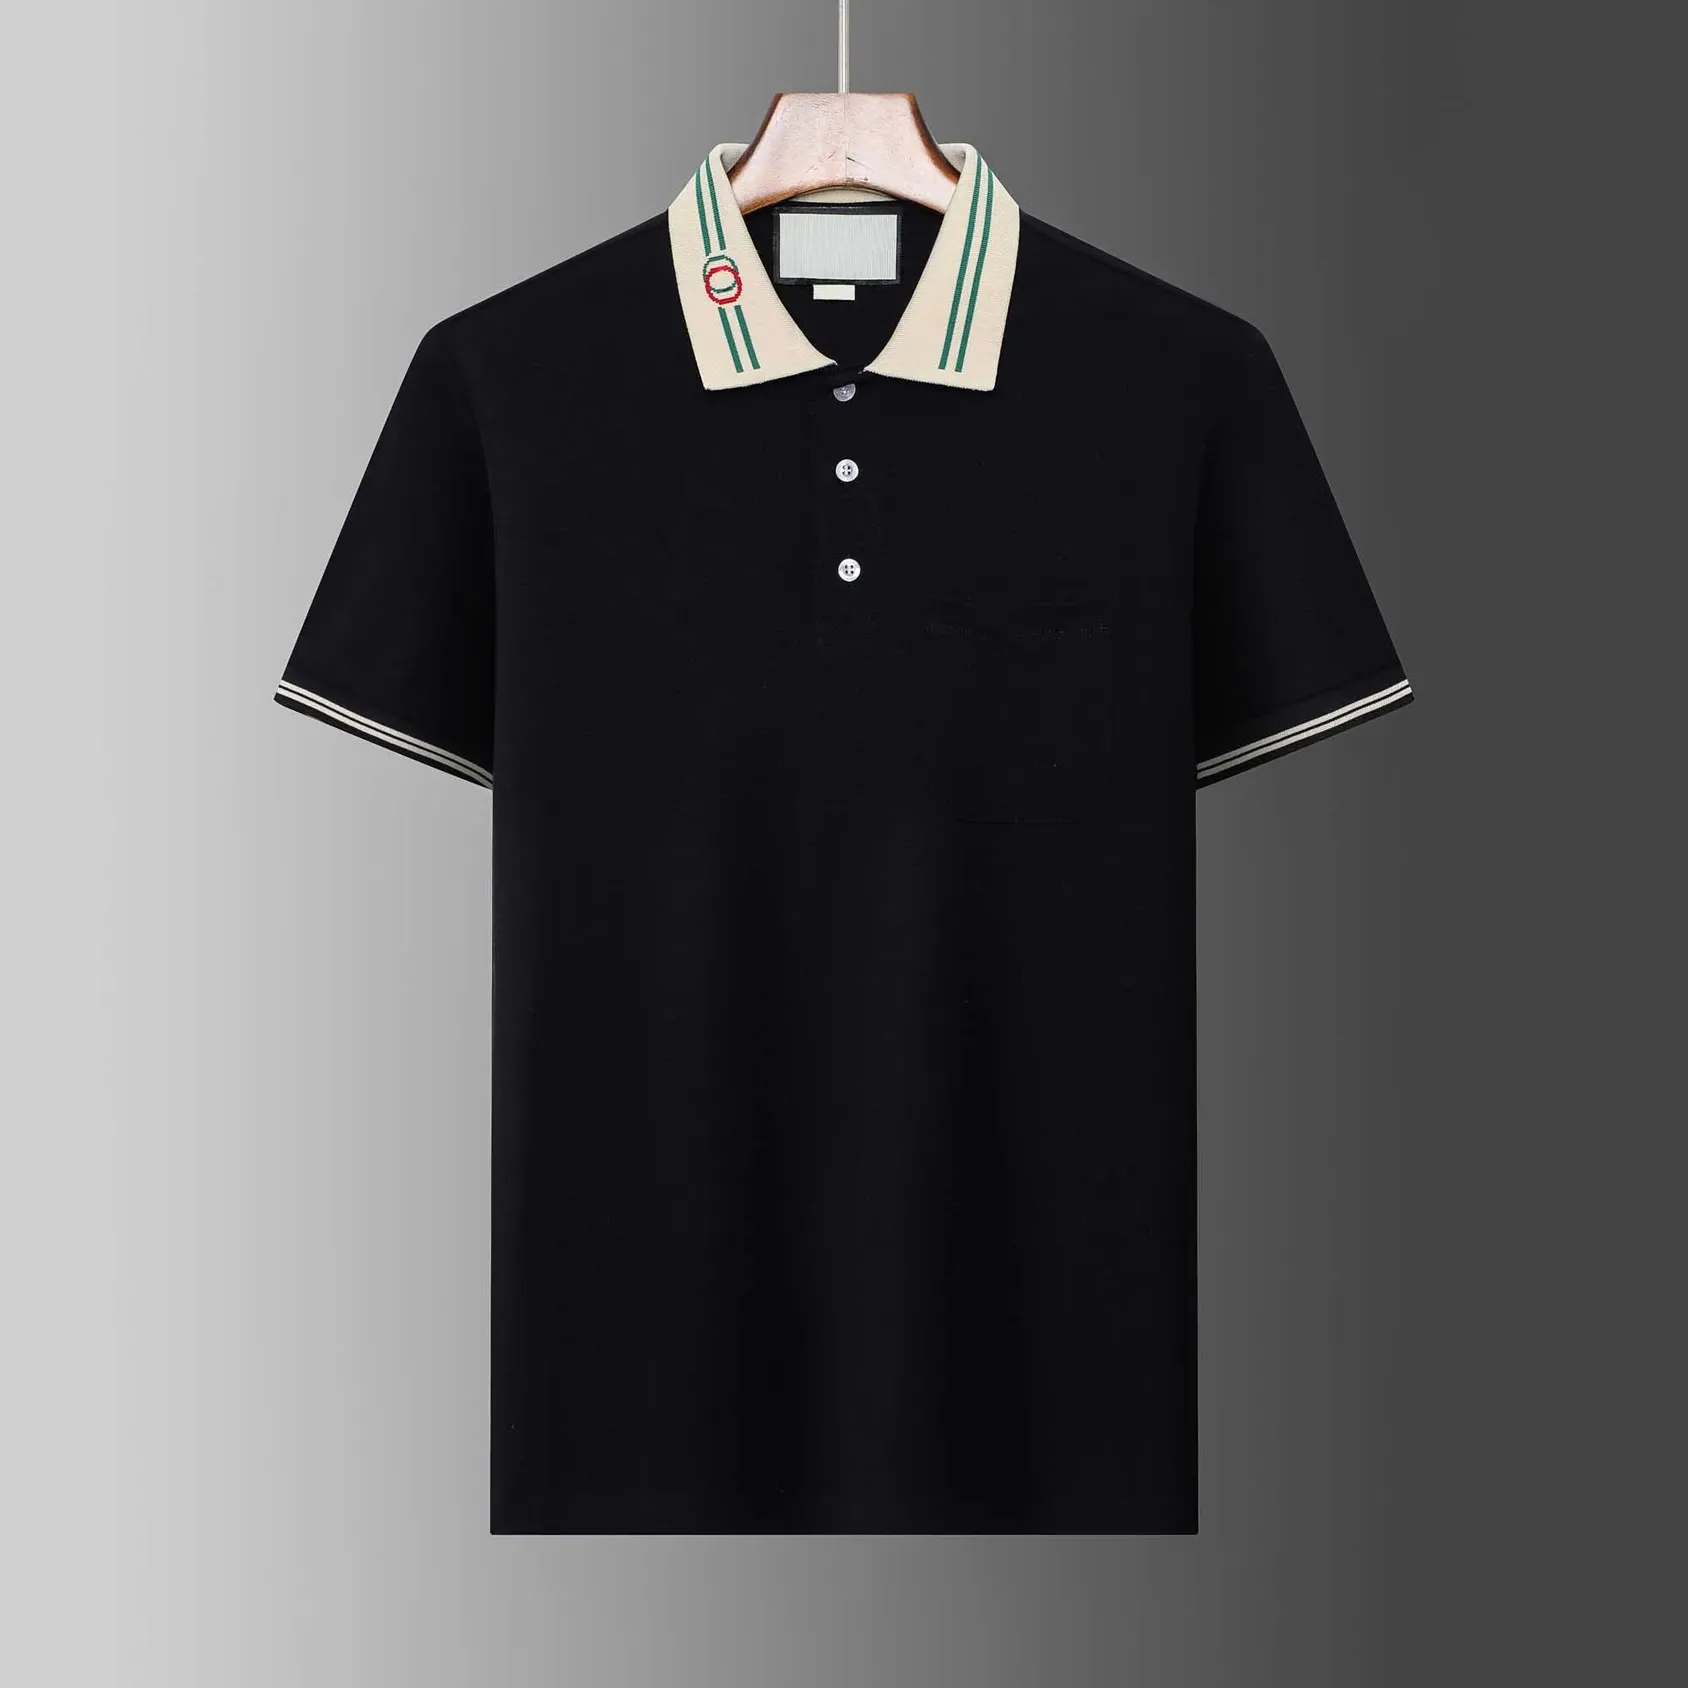 Italien Männer Polo Shirts Schlange Biene Stickerei Mode Casual High Street Kleidung Herren Hemd T-shirts Tops M-XXXL